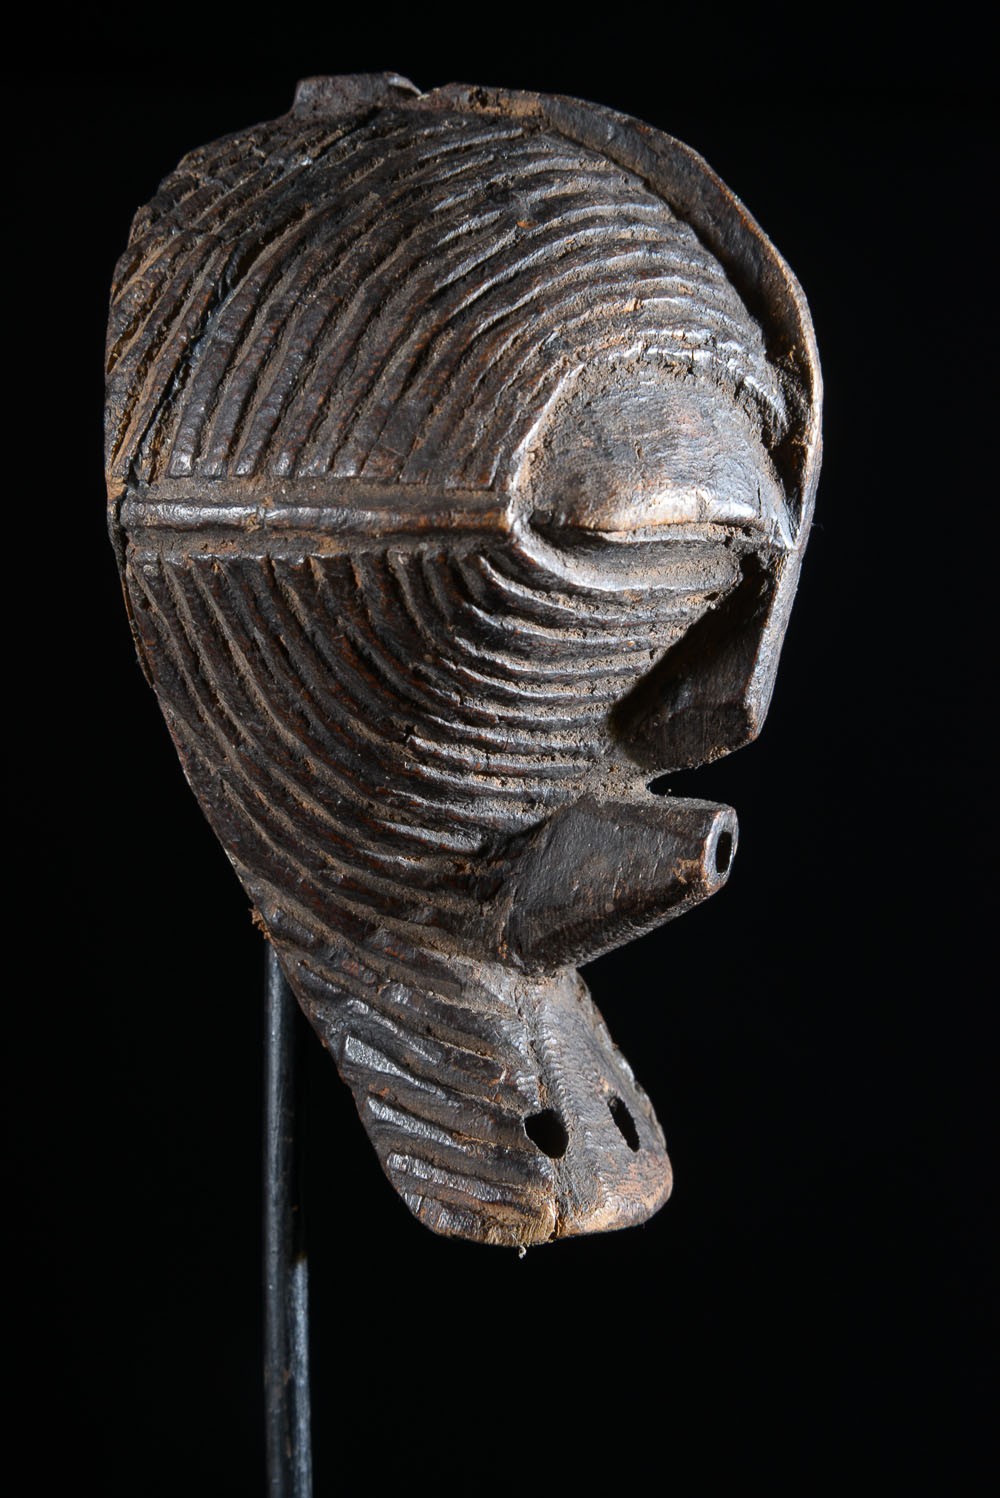 Masque Insigne ou de grade Kifwebe - Songye - RDC Zaire